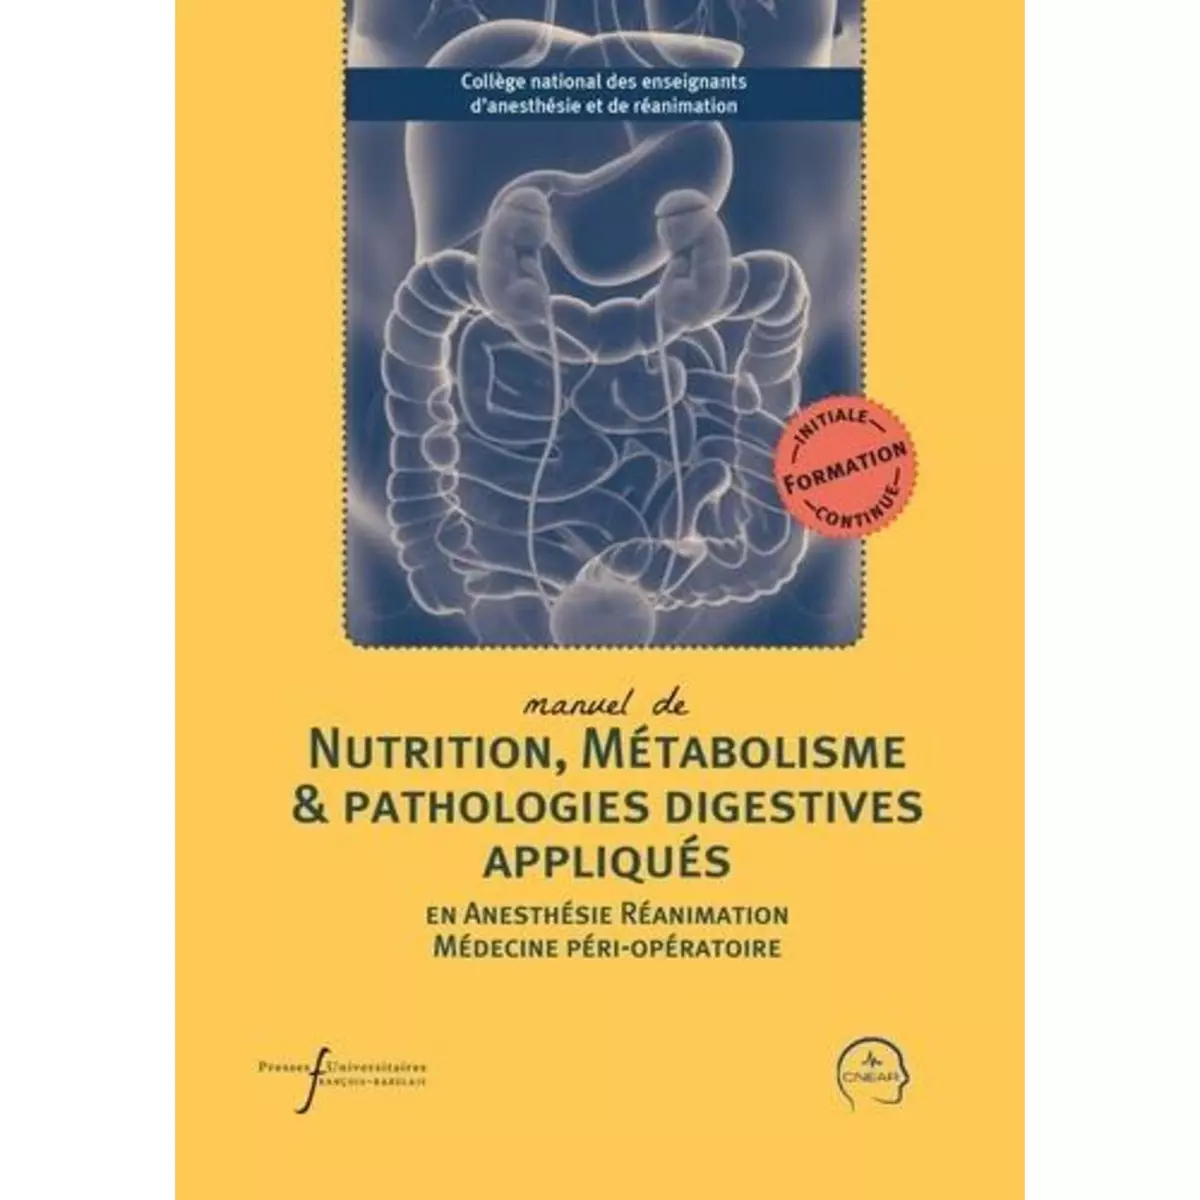  MANUEL DE NUTRITION, METABOLISME & PATHOLOGIES DIGESTIVES APPLIQUES EN ANESTHESIE-REANIMATION ET MEDECINE PERI-OPERATOIRE, CNEAR